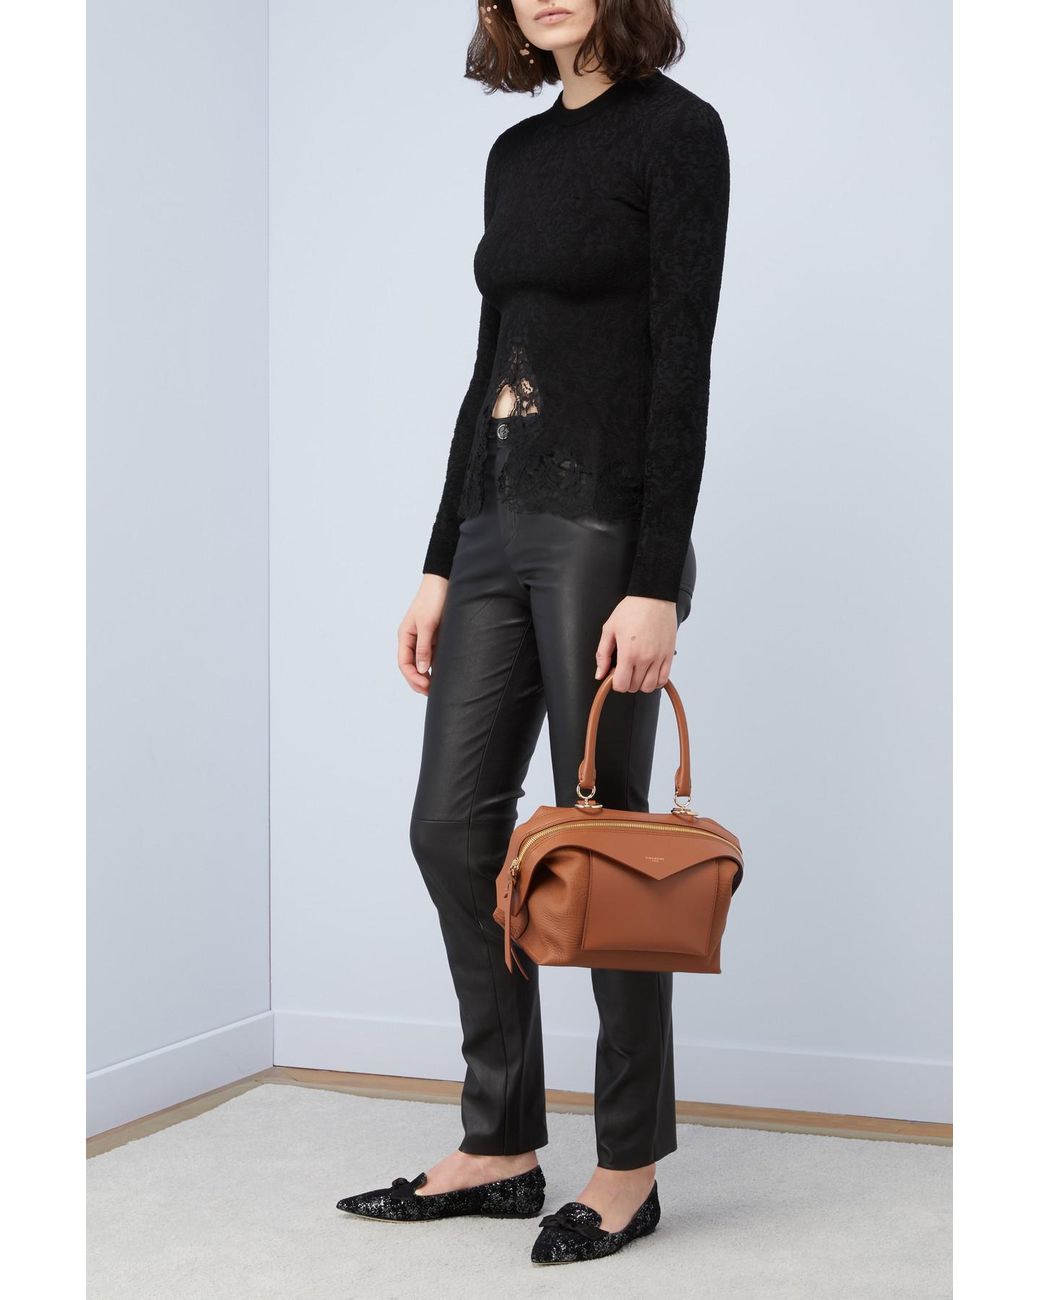 Givenchy Sway Bag  Givenchy bag, Bags, Givenchy